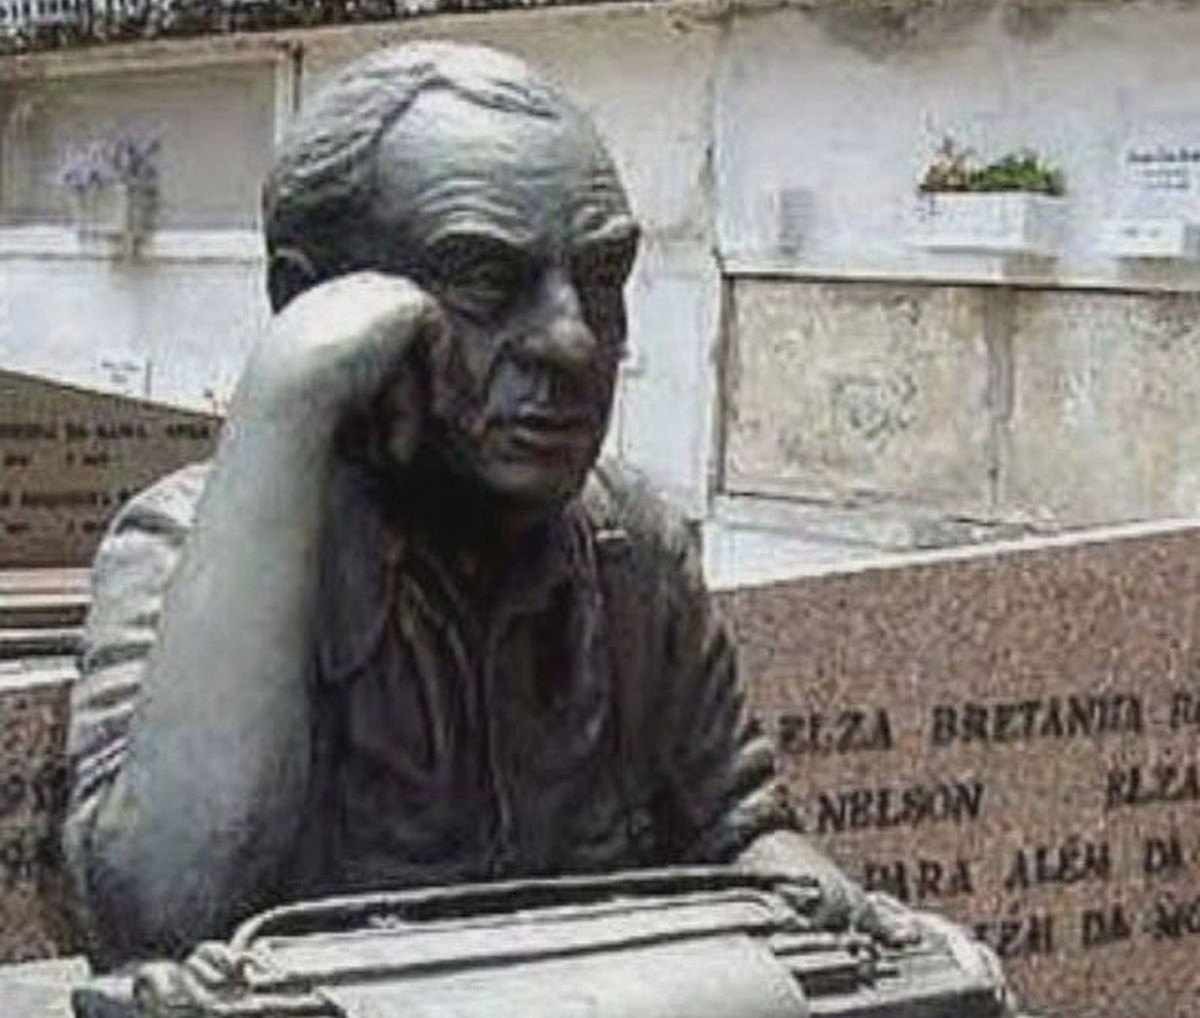 Busto do túmulo do escritor Nelson Rodrigues é furtado em cemitério do RJ